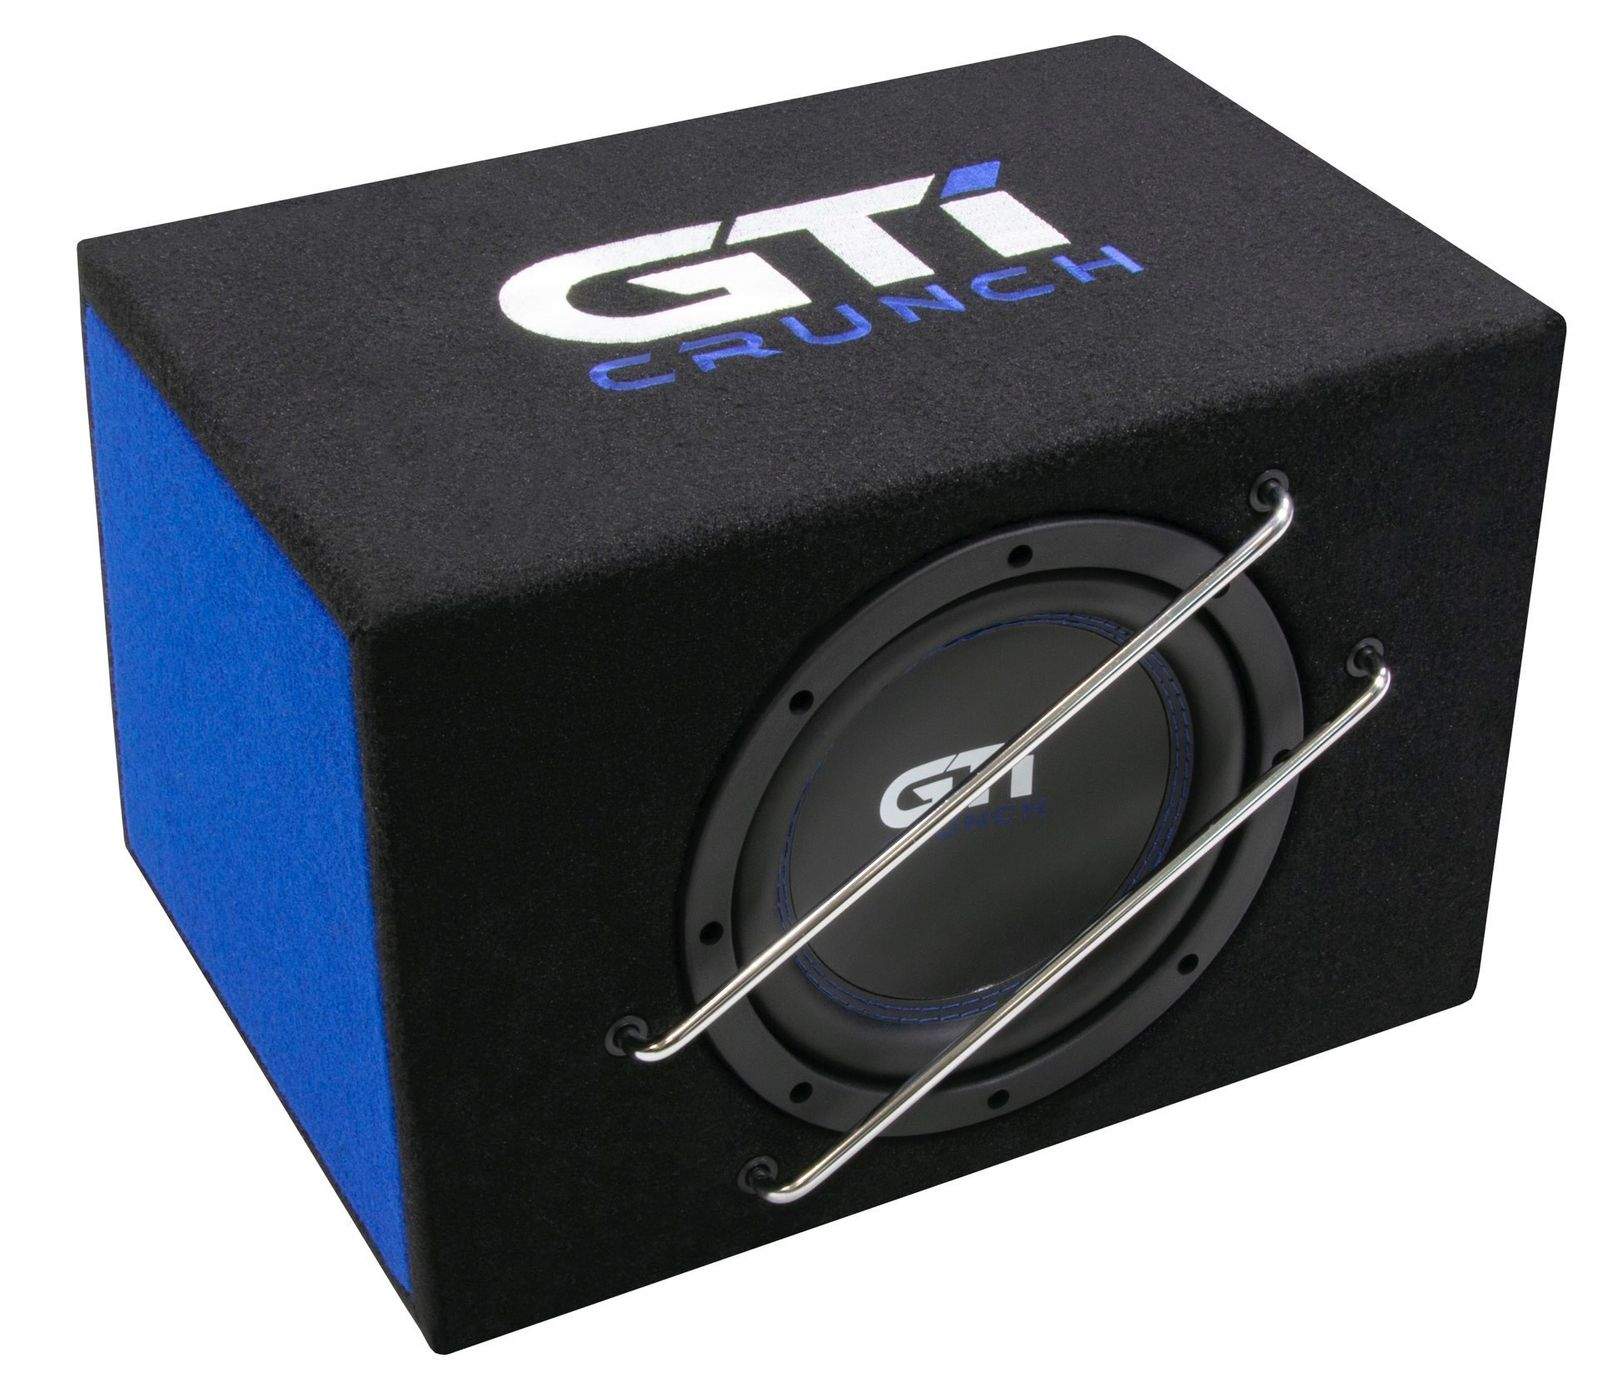 GTI - Aktiver Aktivsubwoofer Crunch Subwoofer BASS Lautsprecher 800A 200mm Active Bassreflex 20cm CRUNCH